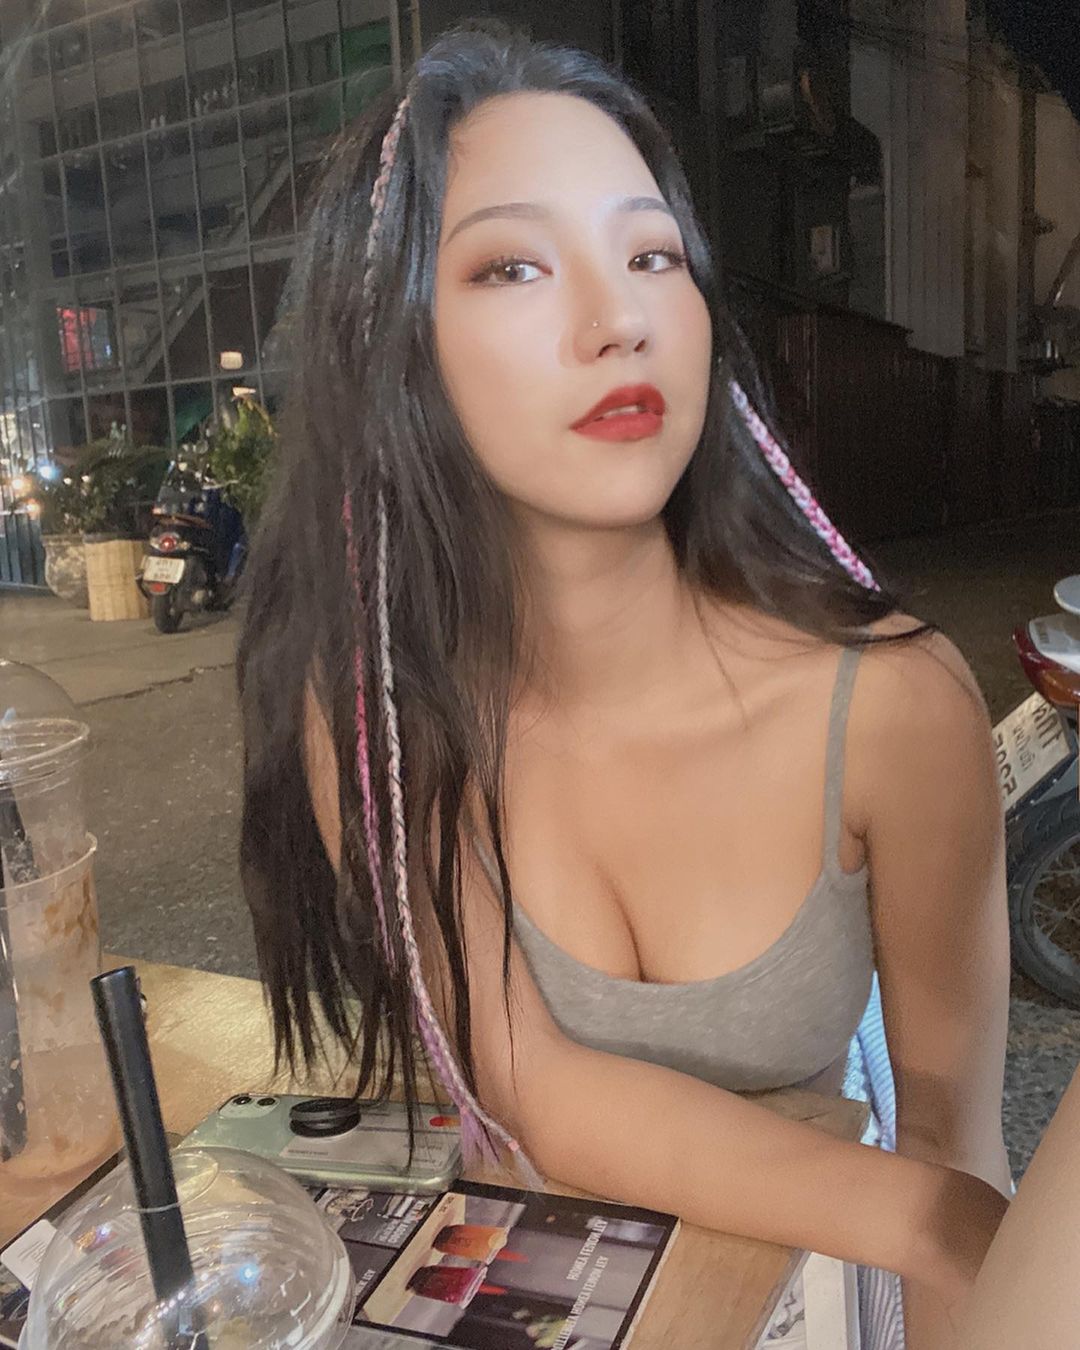 韓國美女攝影師「Ari」小麥肌膚色散發性感健康美　火辣「比基尼曲線」呈S型前凸後翹